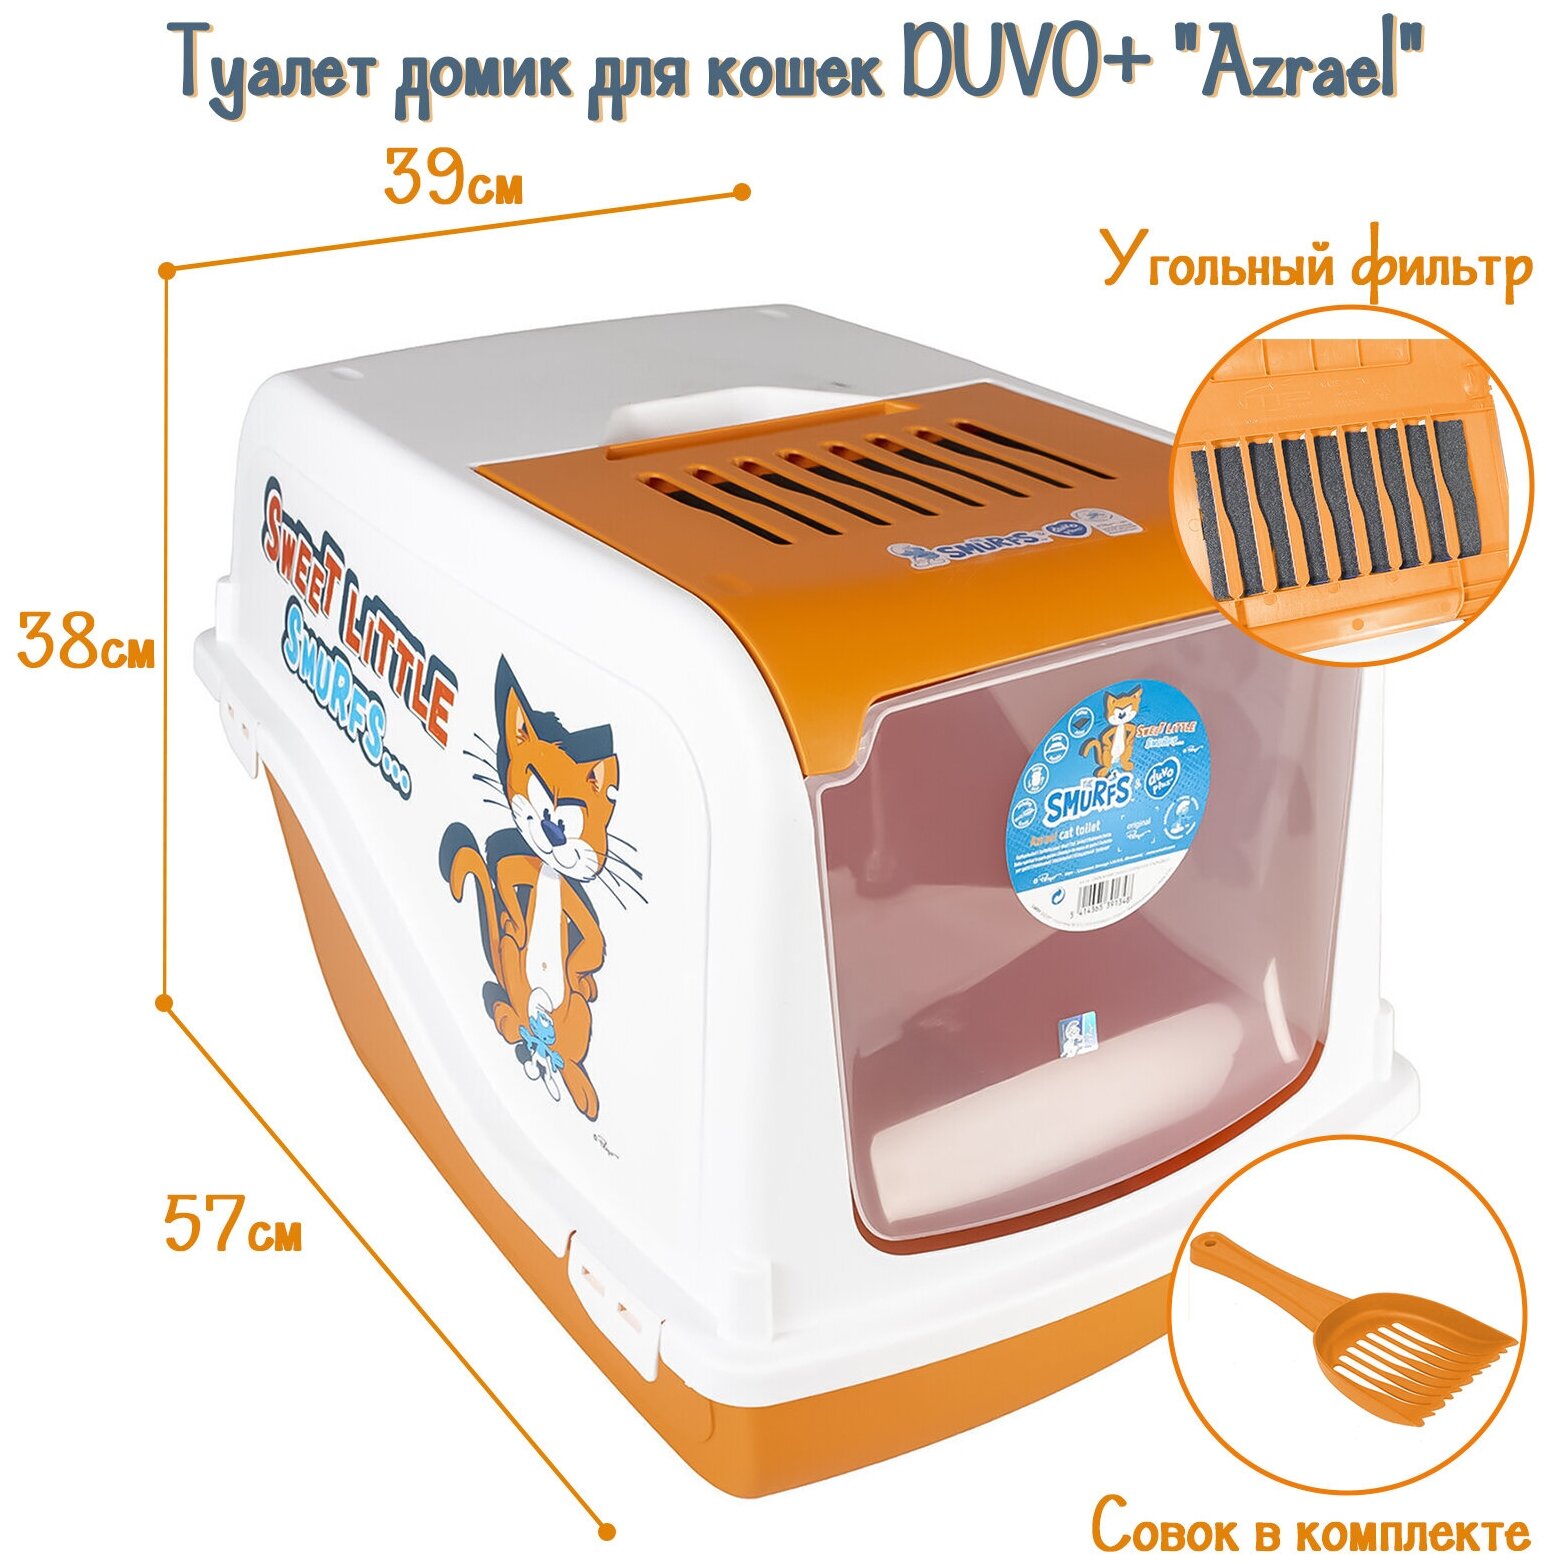 Туалет для кошек закрытый DUVO+ "Azrael", оранжево-белый, 57x39x38см (Бельгия)